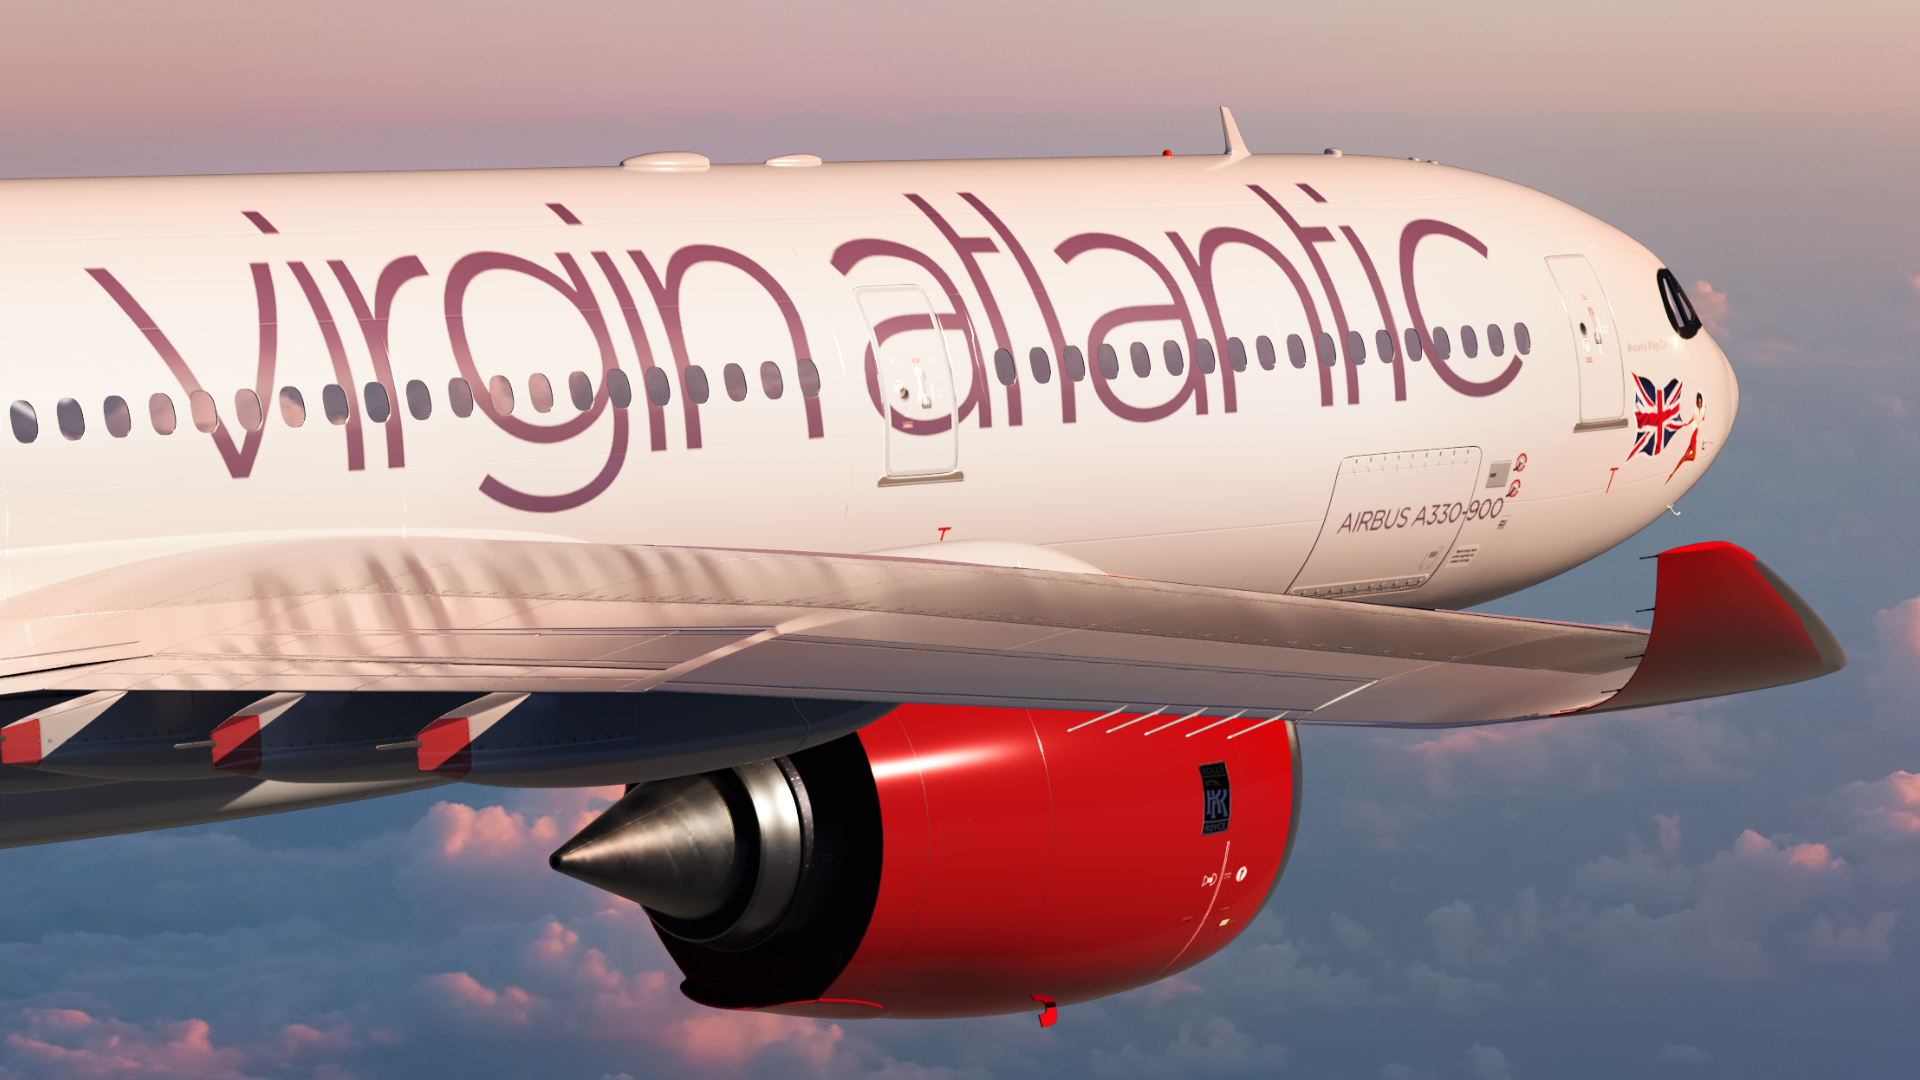 Sabena technics cung cấp dịch vụ bảo trì cơ sở tại Bordeaux cho máy bay Virgin Atlantic A330neo